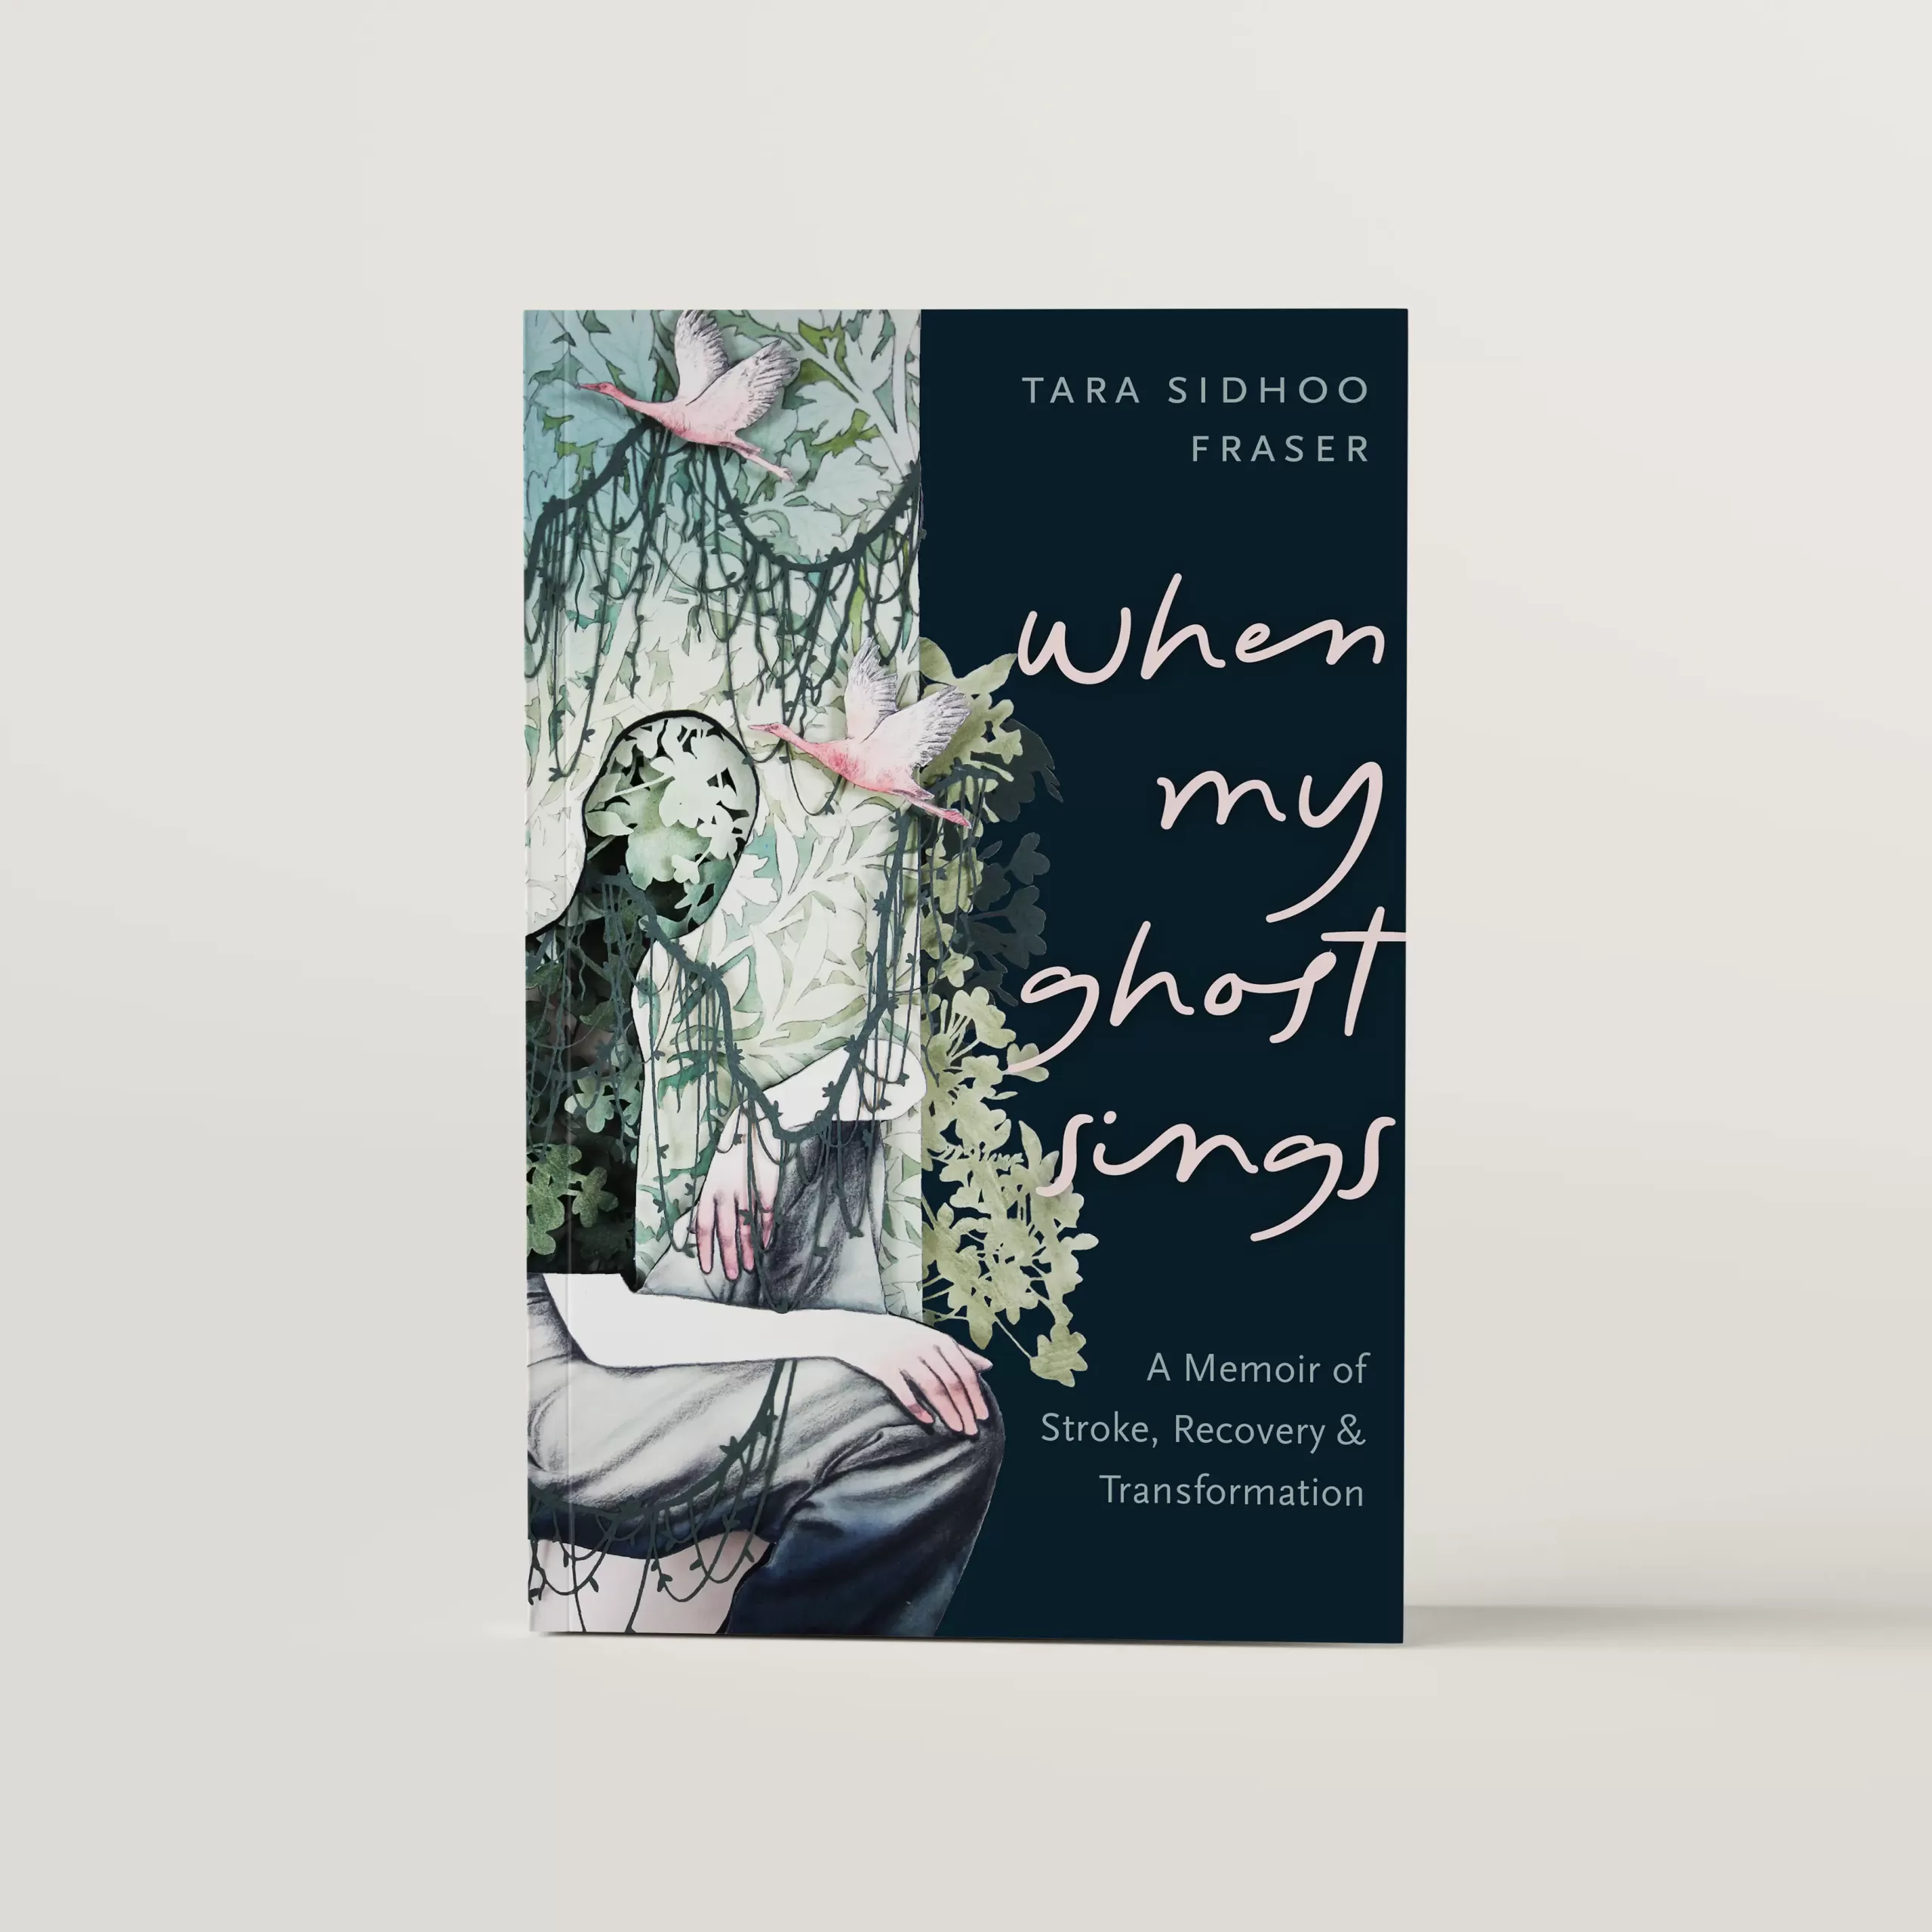 Cover design of memoir, When My Ghost Sings